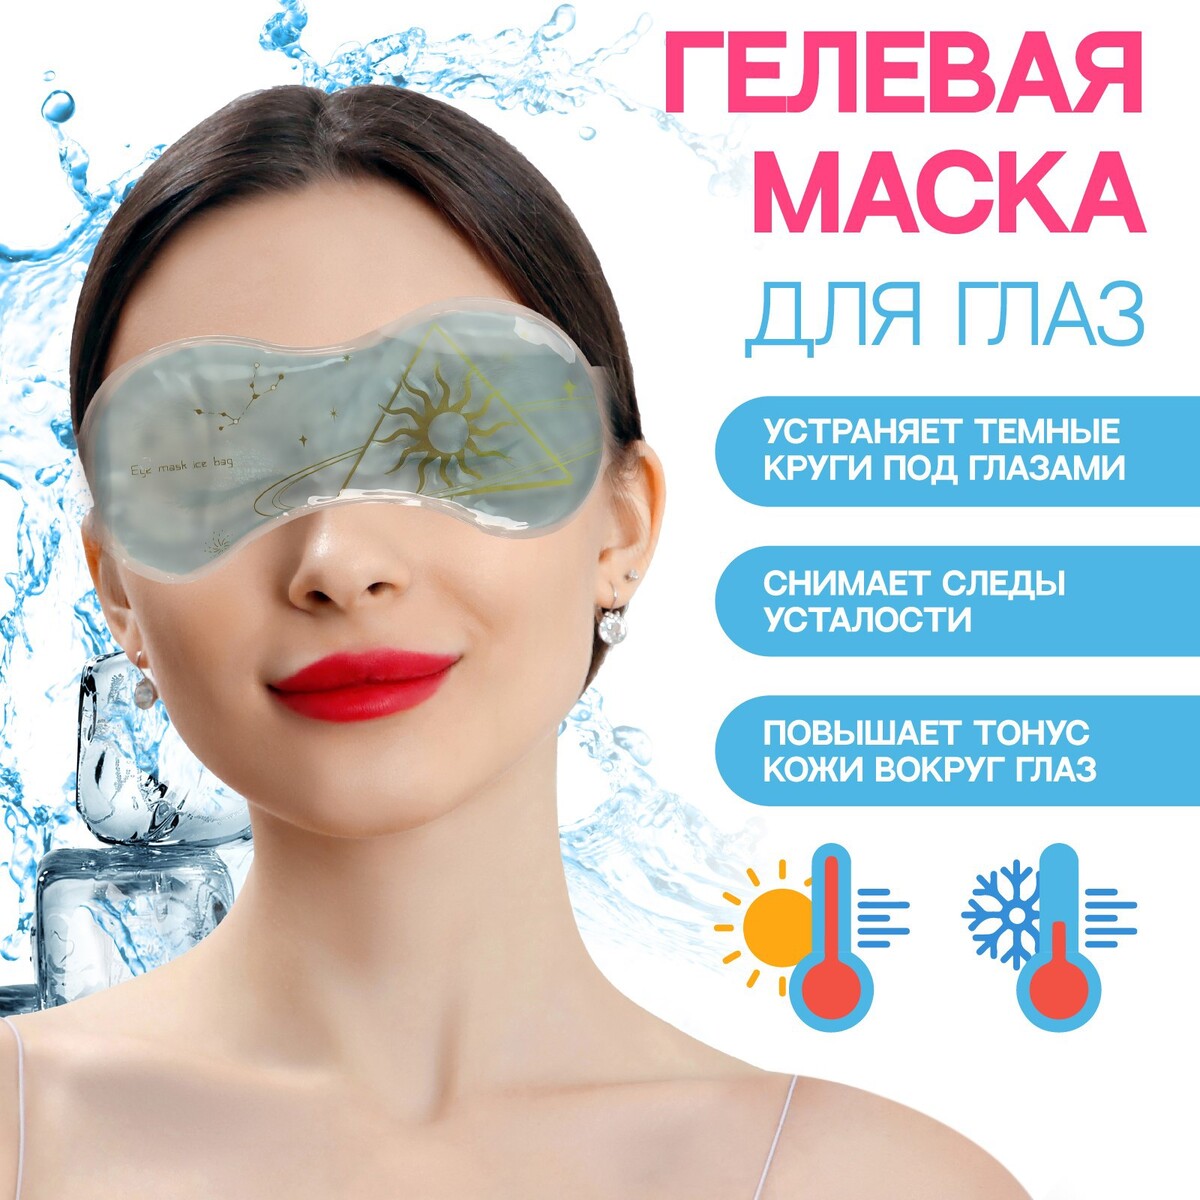 Гелевая маска для области вокруг глаз плавание в холодной воде как сделать первый шаг к здоровью счастью и крепкому иммунитету